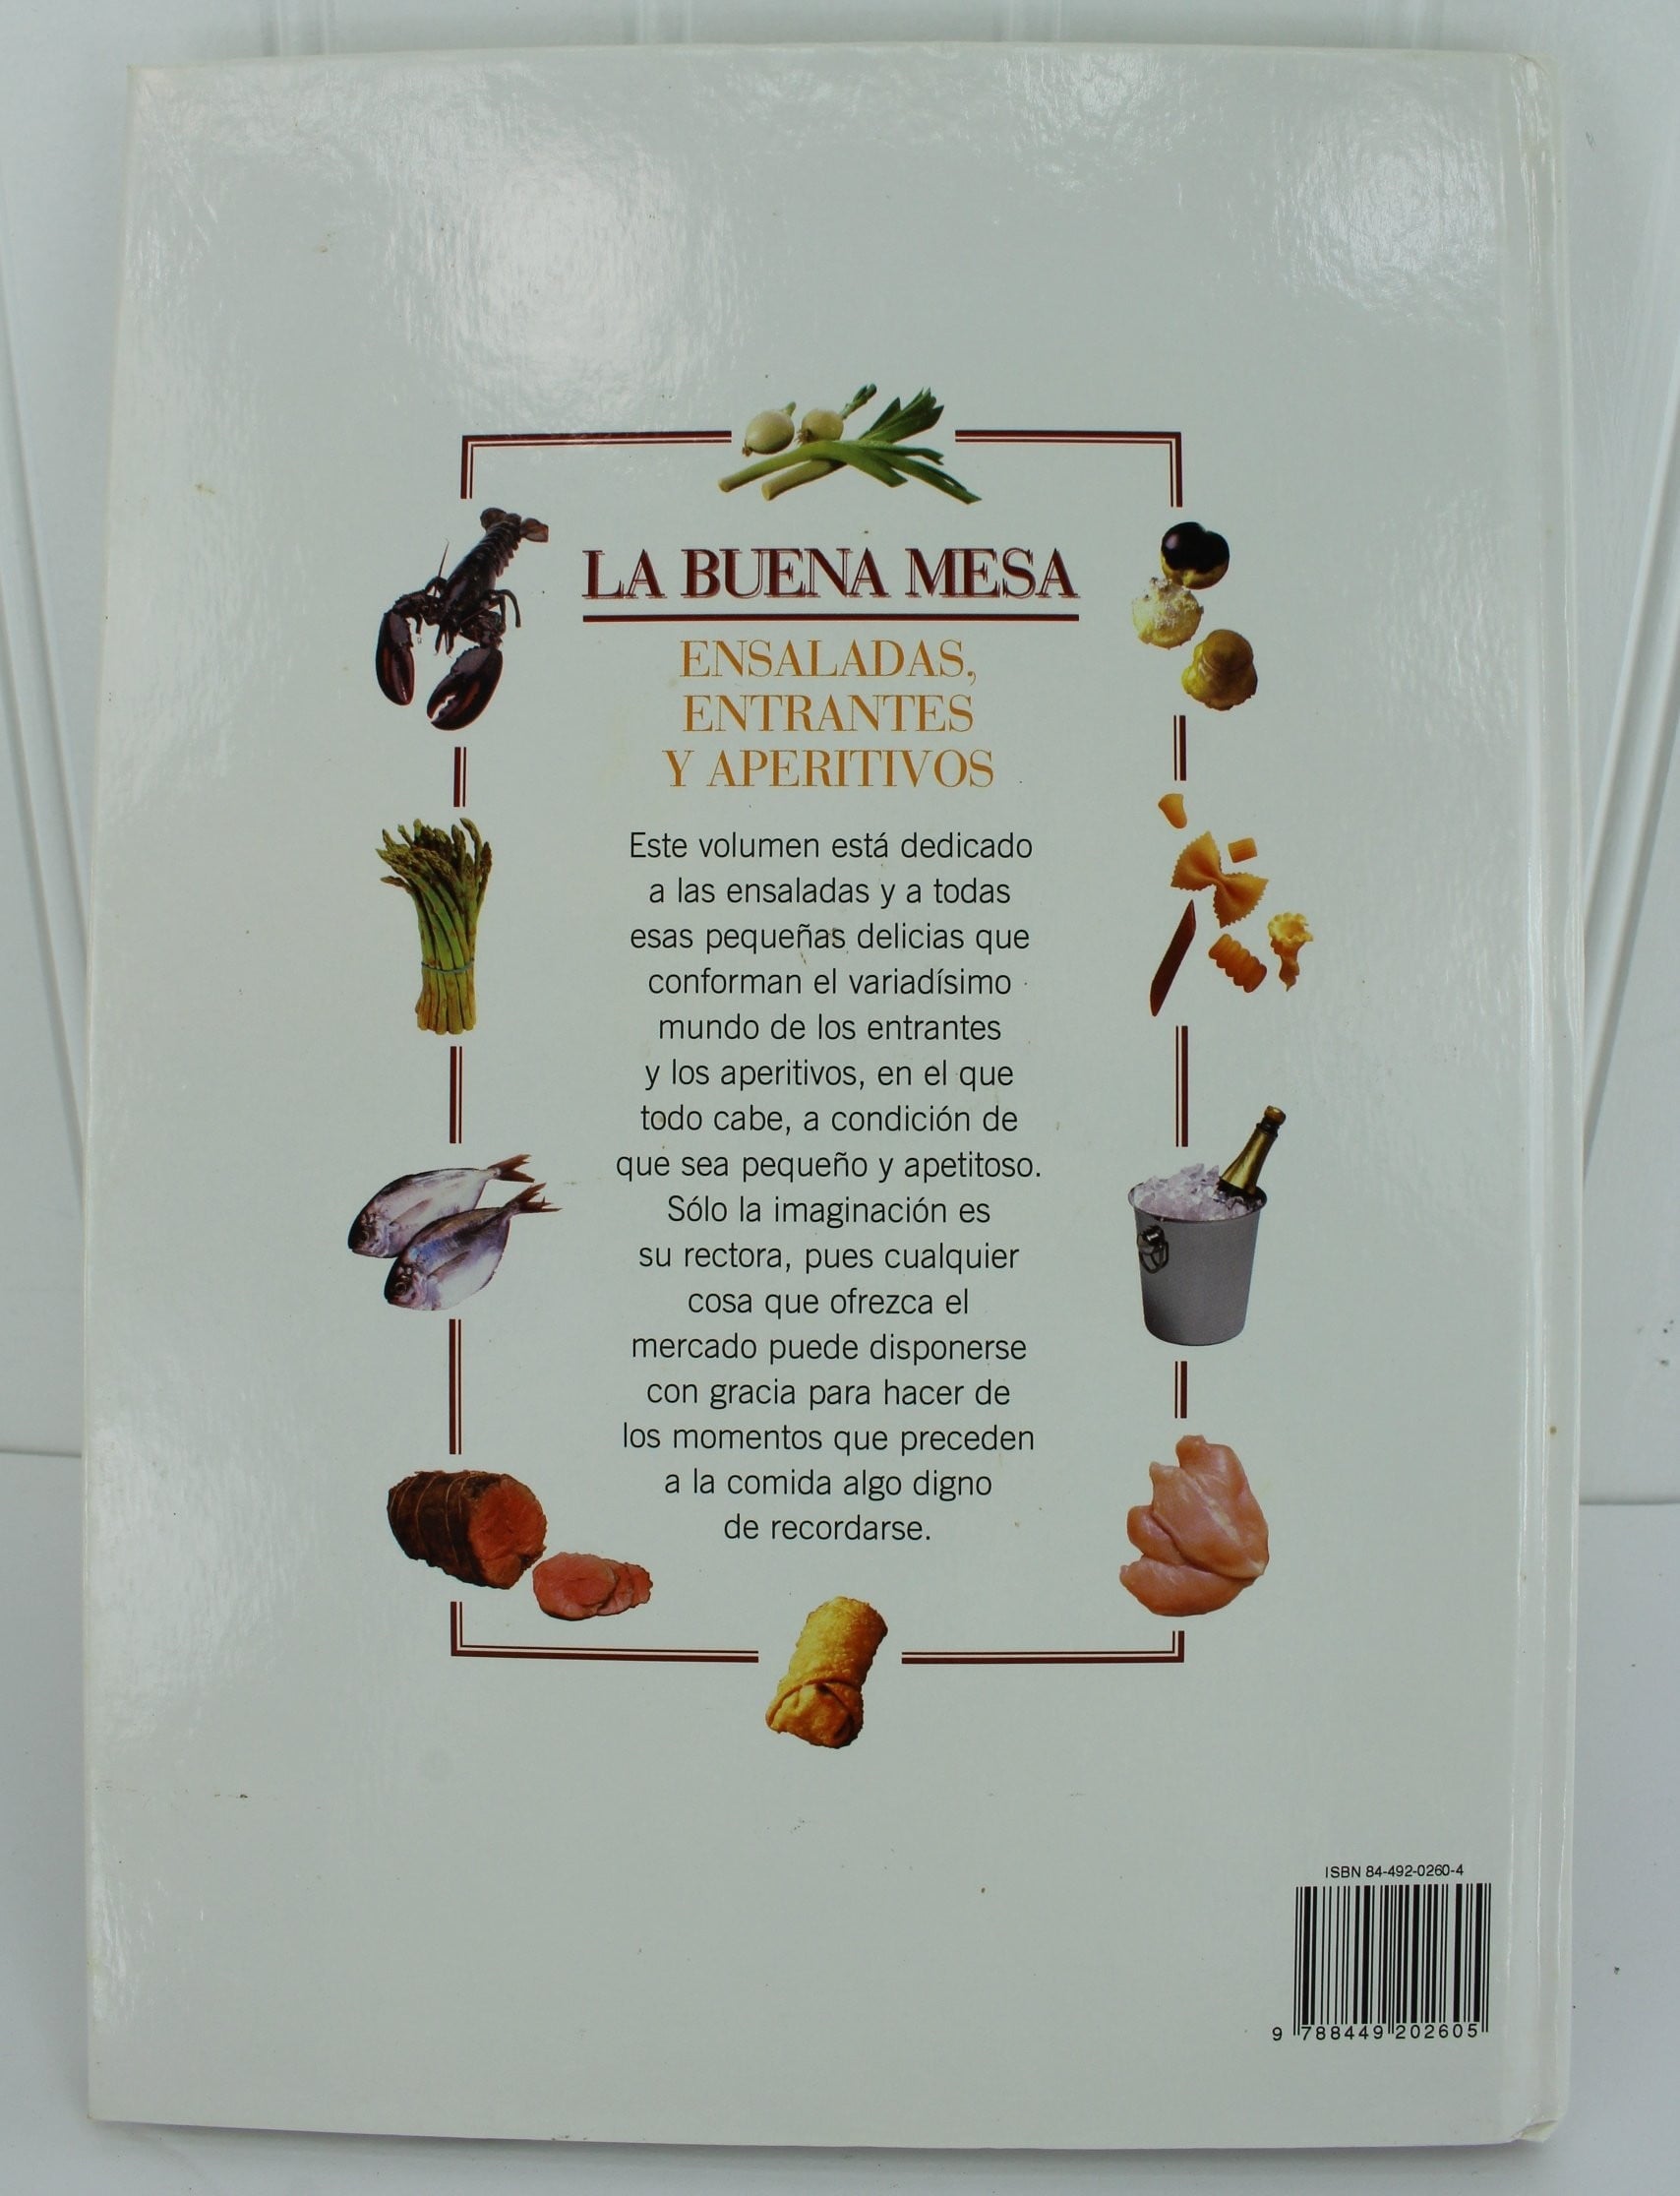 Bastin Cookbook Madrid "La Buena Mesa" Ensaladas Entrantes Aperitivos en Espanol in Spanish